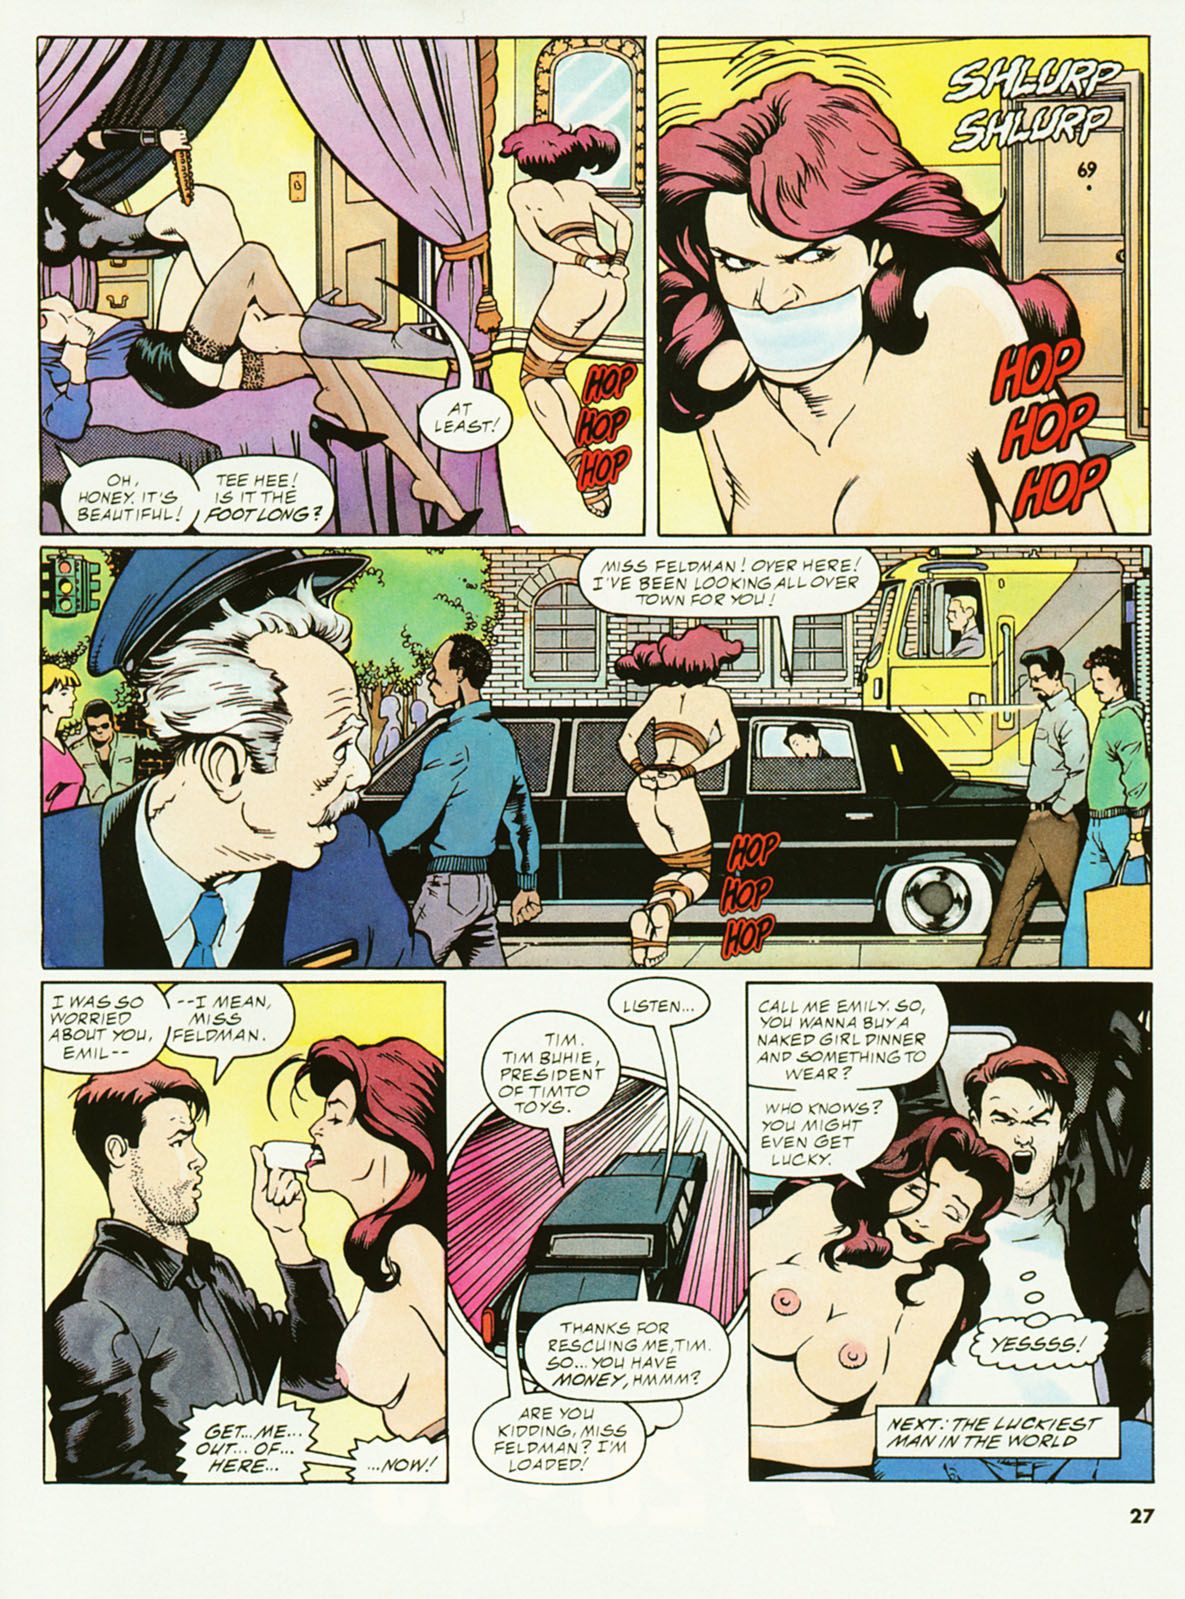 penthouse męskie przygody komiks #2 część 2